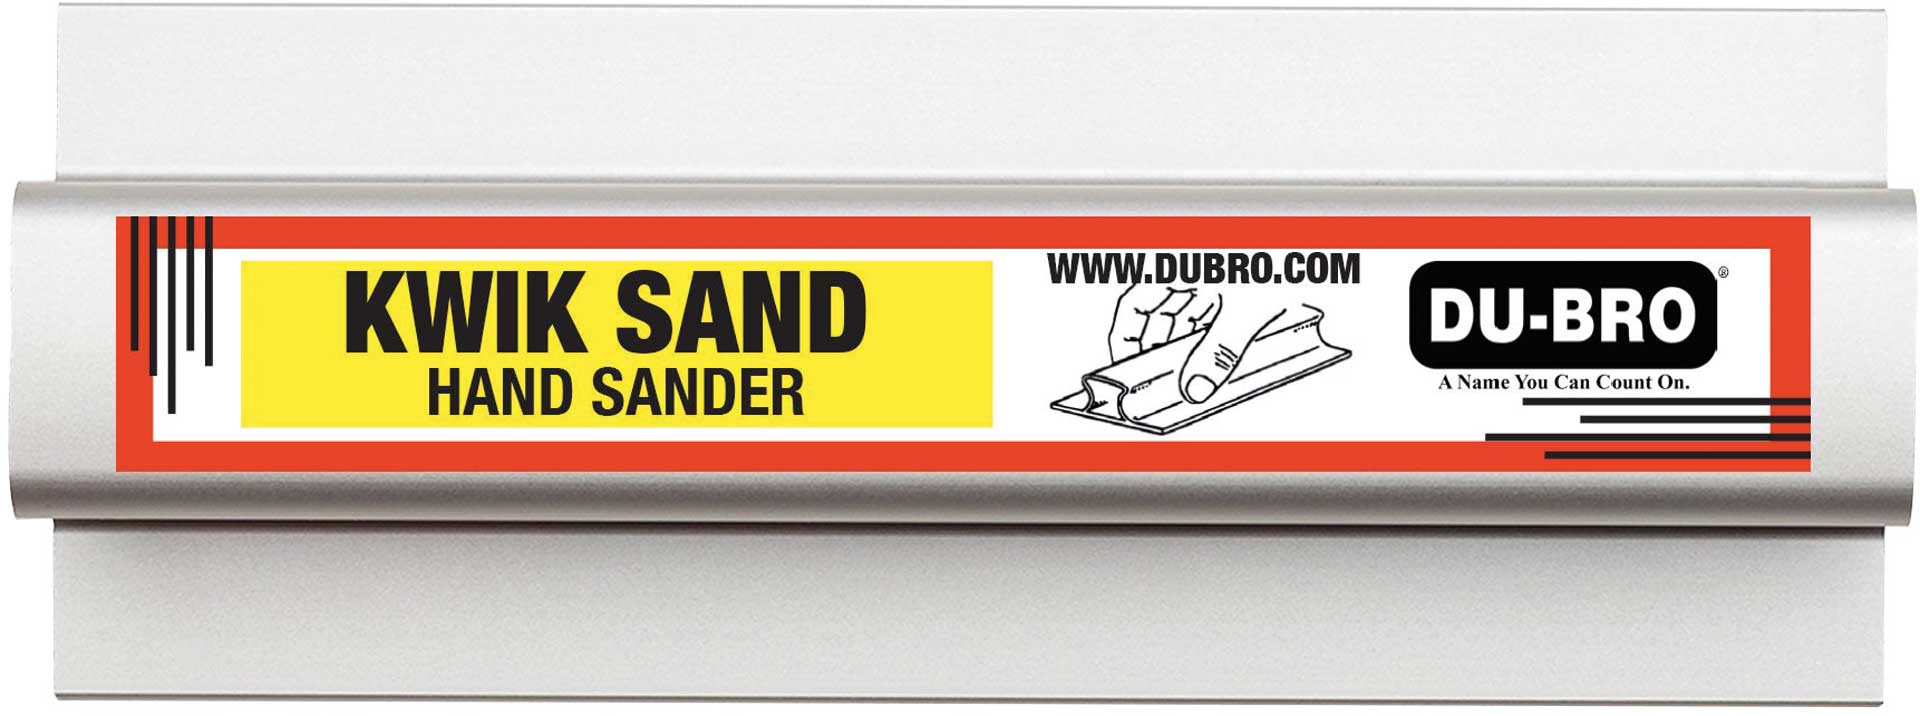 DUBRO Kwik Hand Sander 138x63mm (5,5"x2,5") mit je 1x P80/150/220 Schleifpapier, Schleifblock, Schleifleiste, Alu